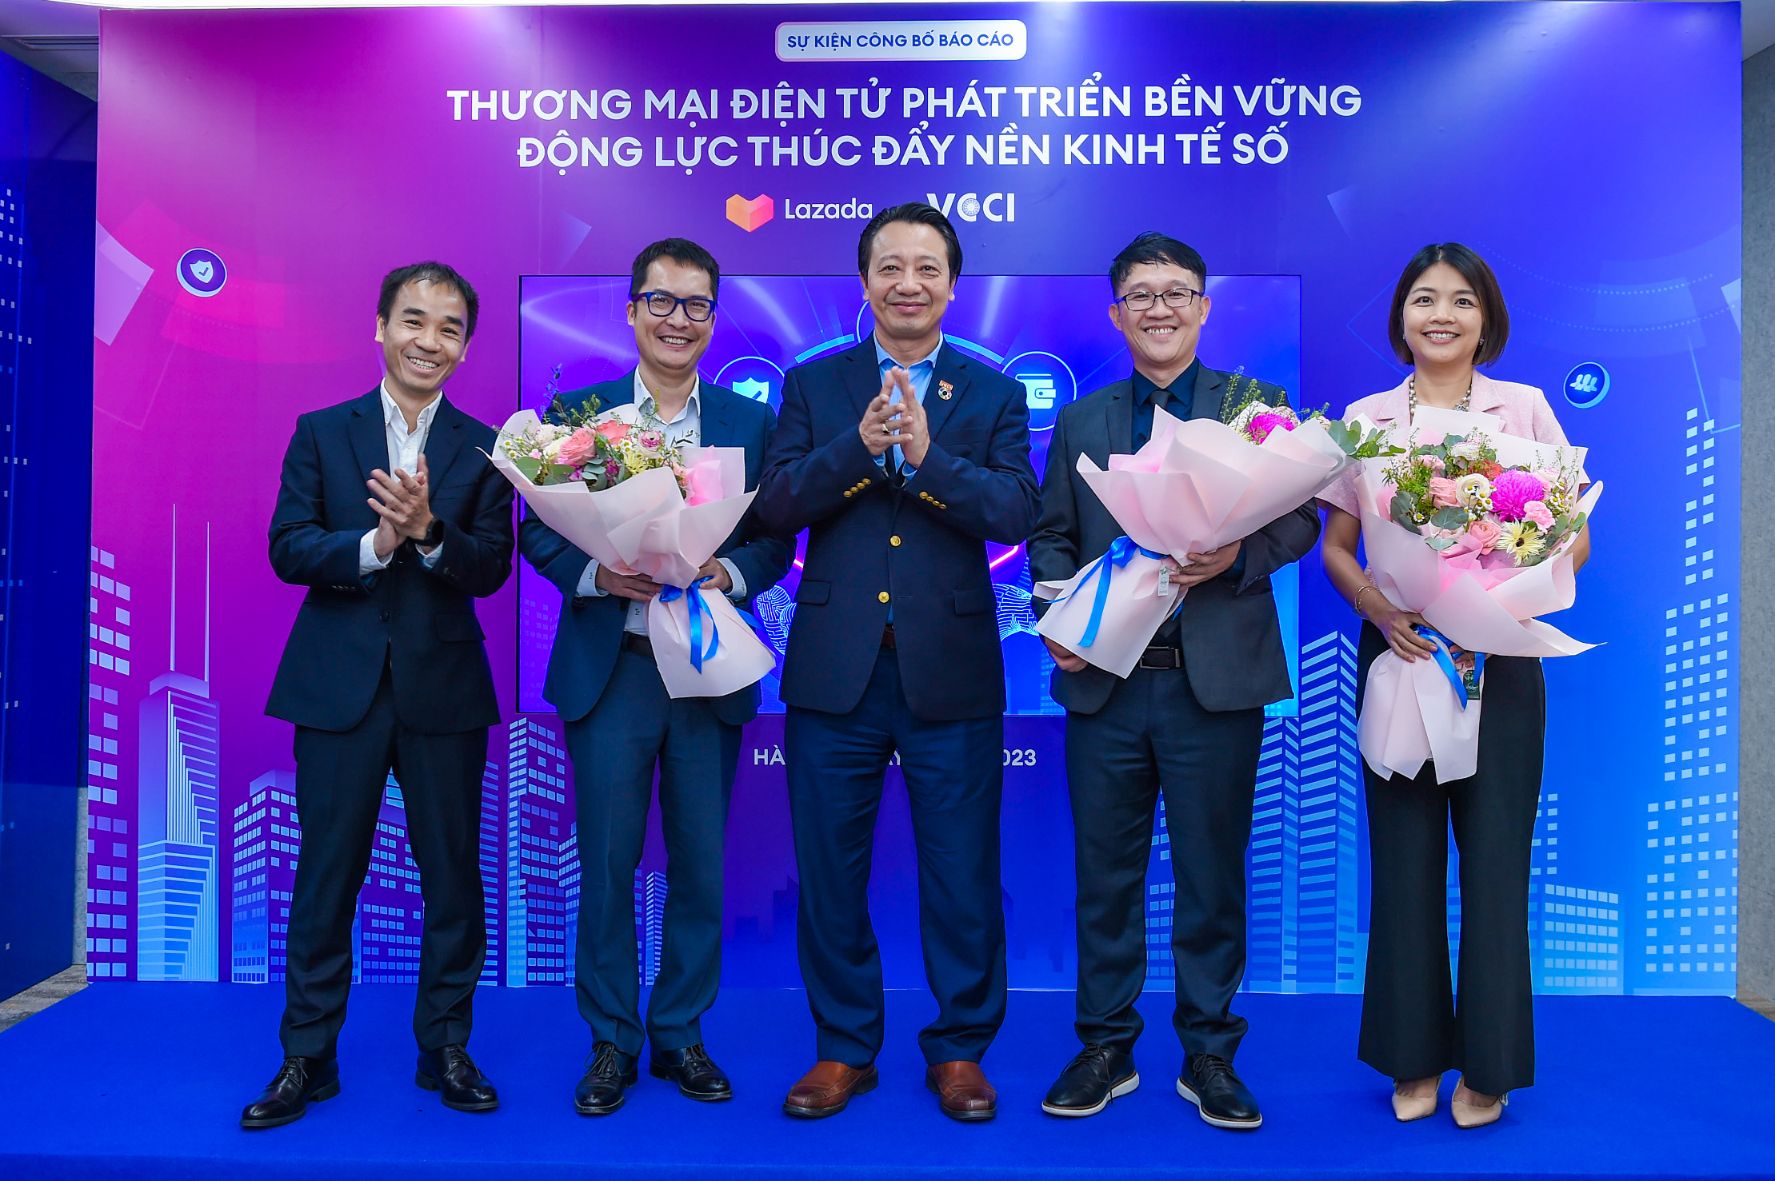 Đại diện Lazada và các chuyên gia 2 Lazada Việt Nam và câu chuyện phát triển bền vững ngành Thương mại điện tử